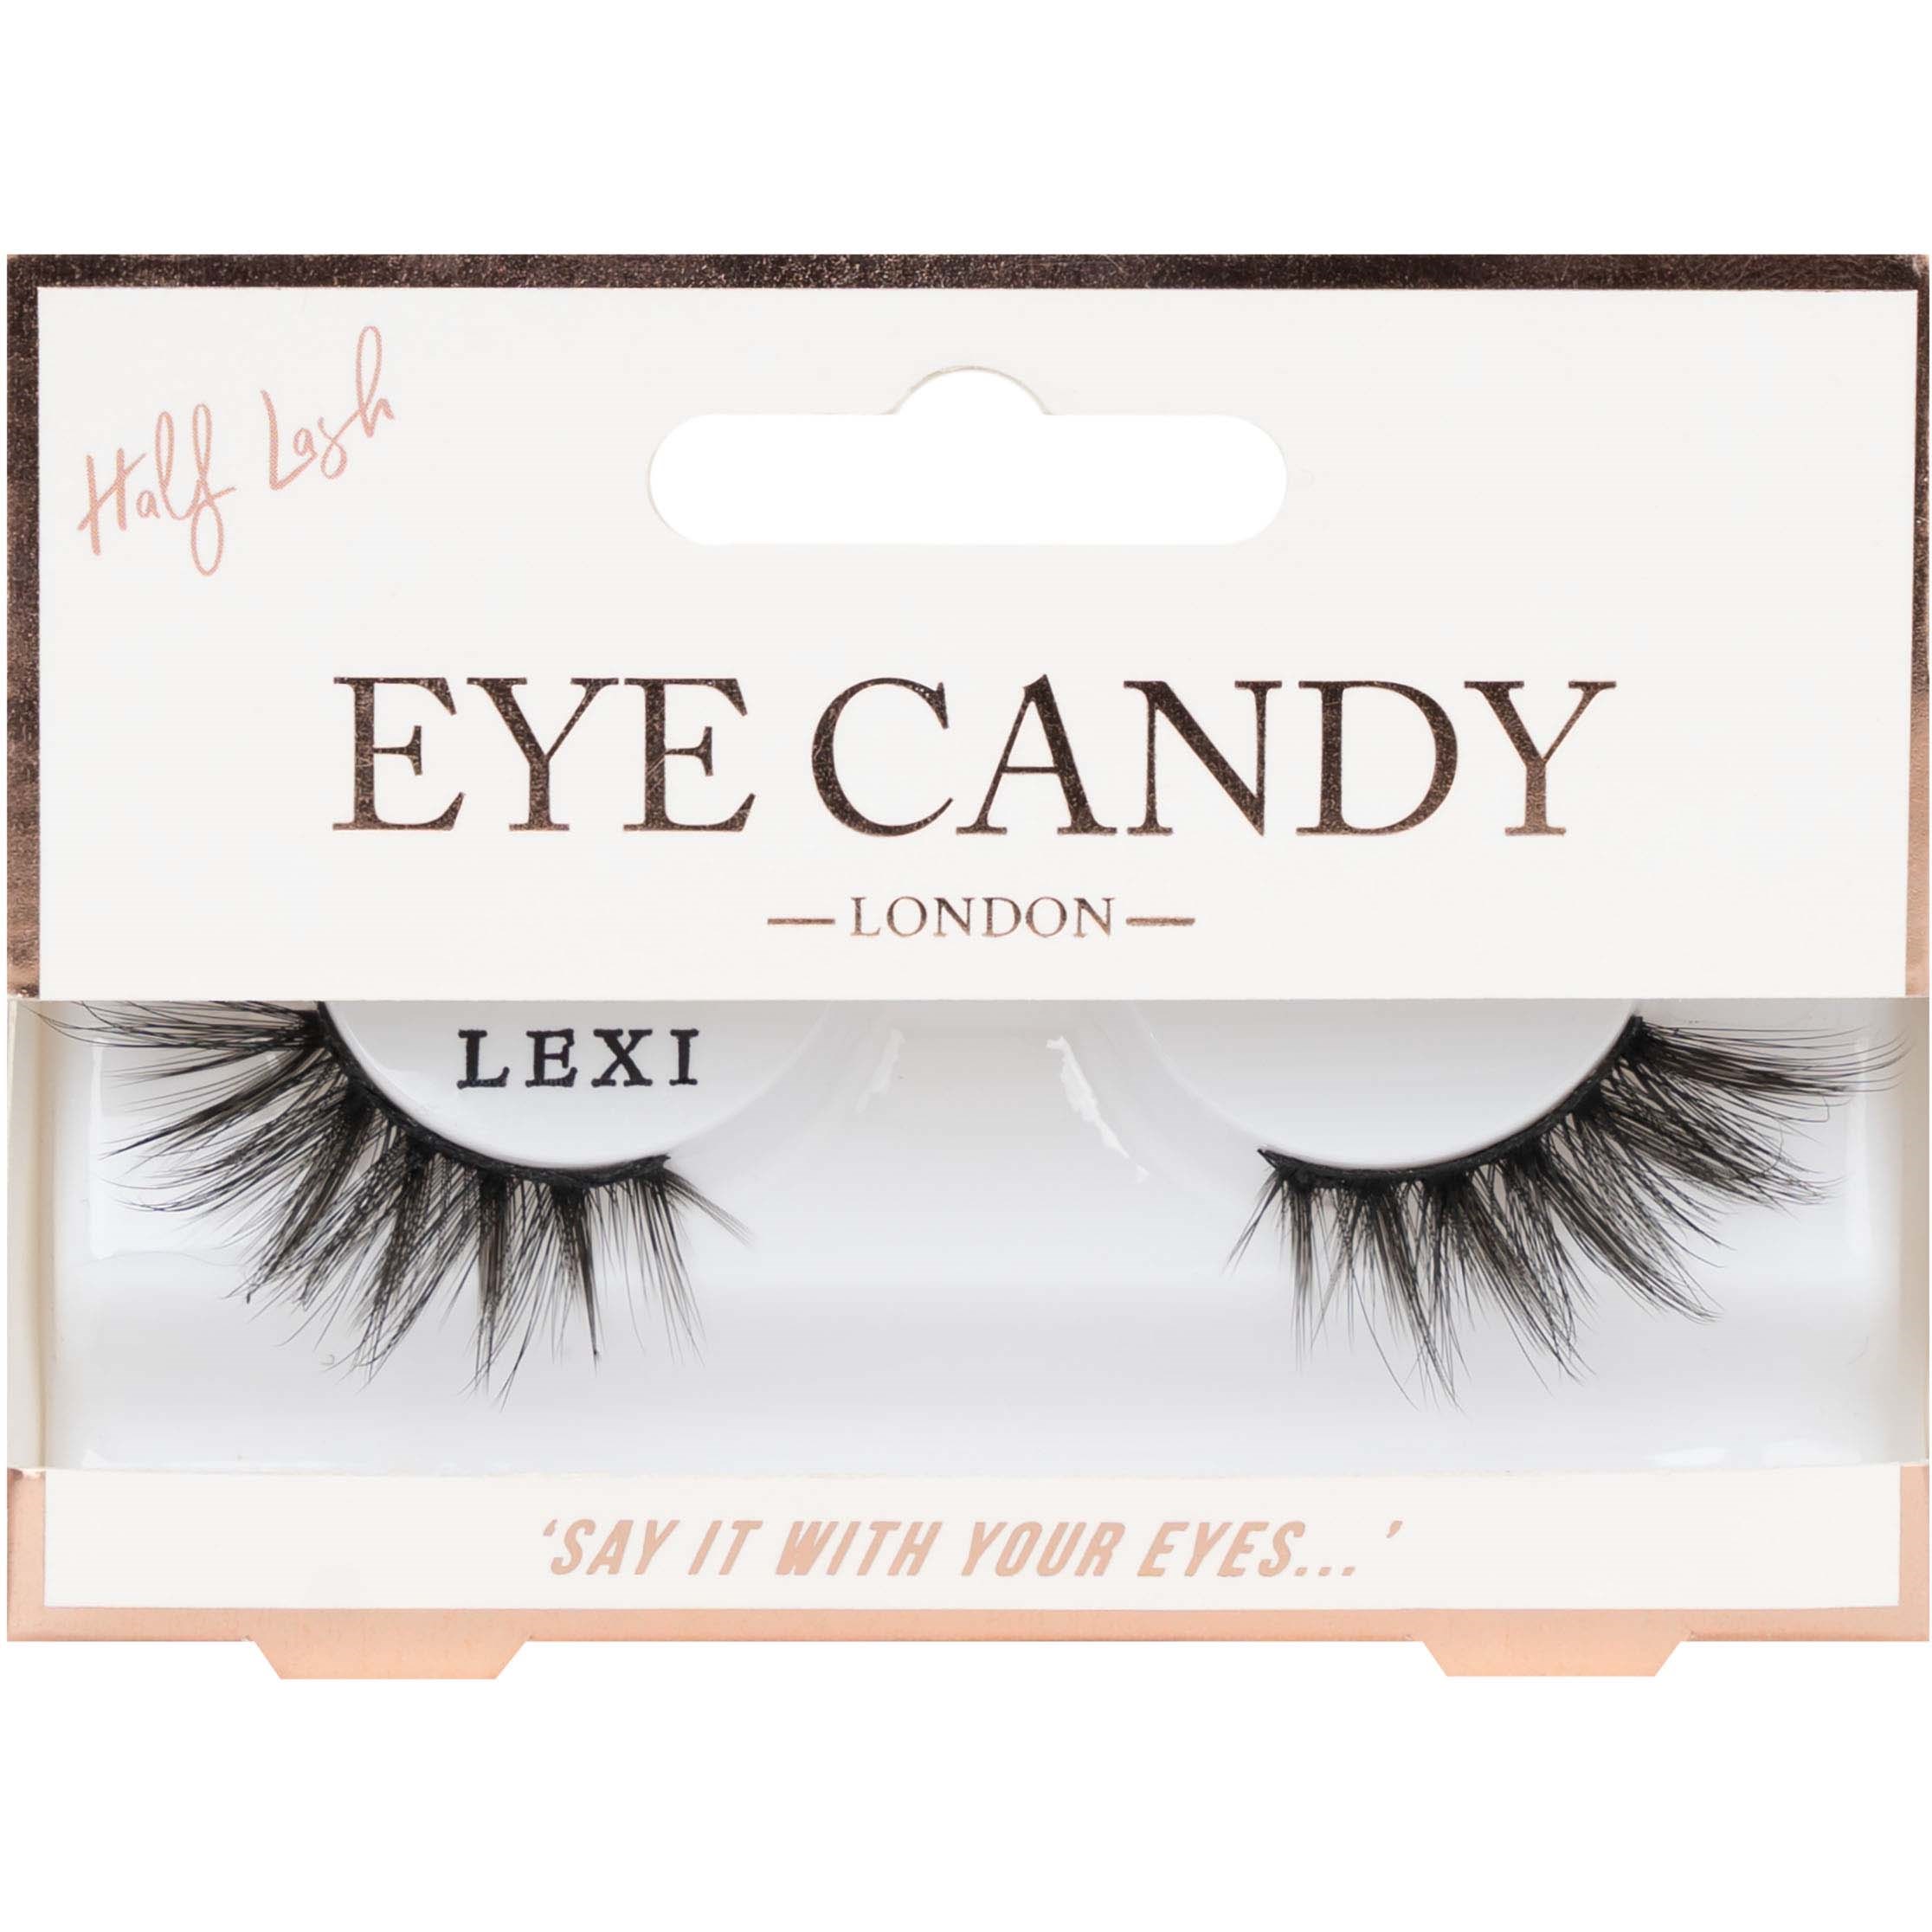 Eye candy eye candy half lash lexi